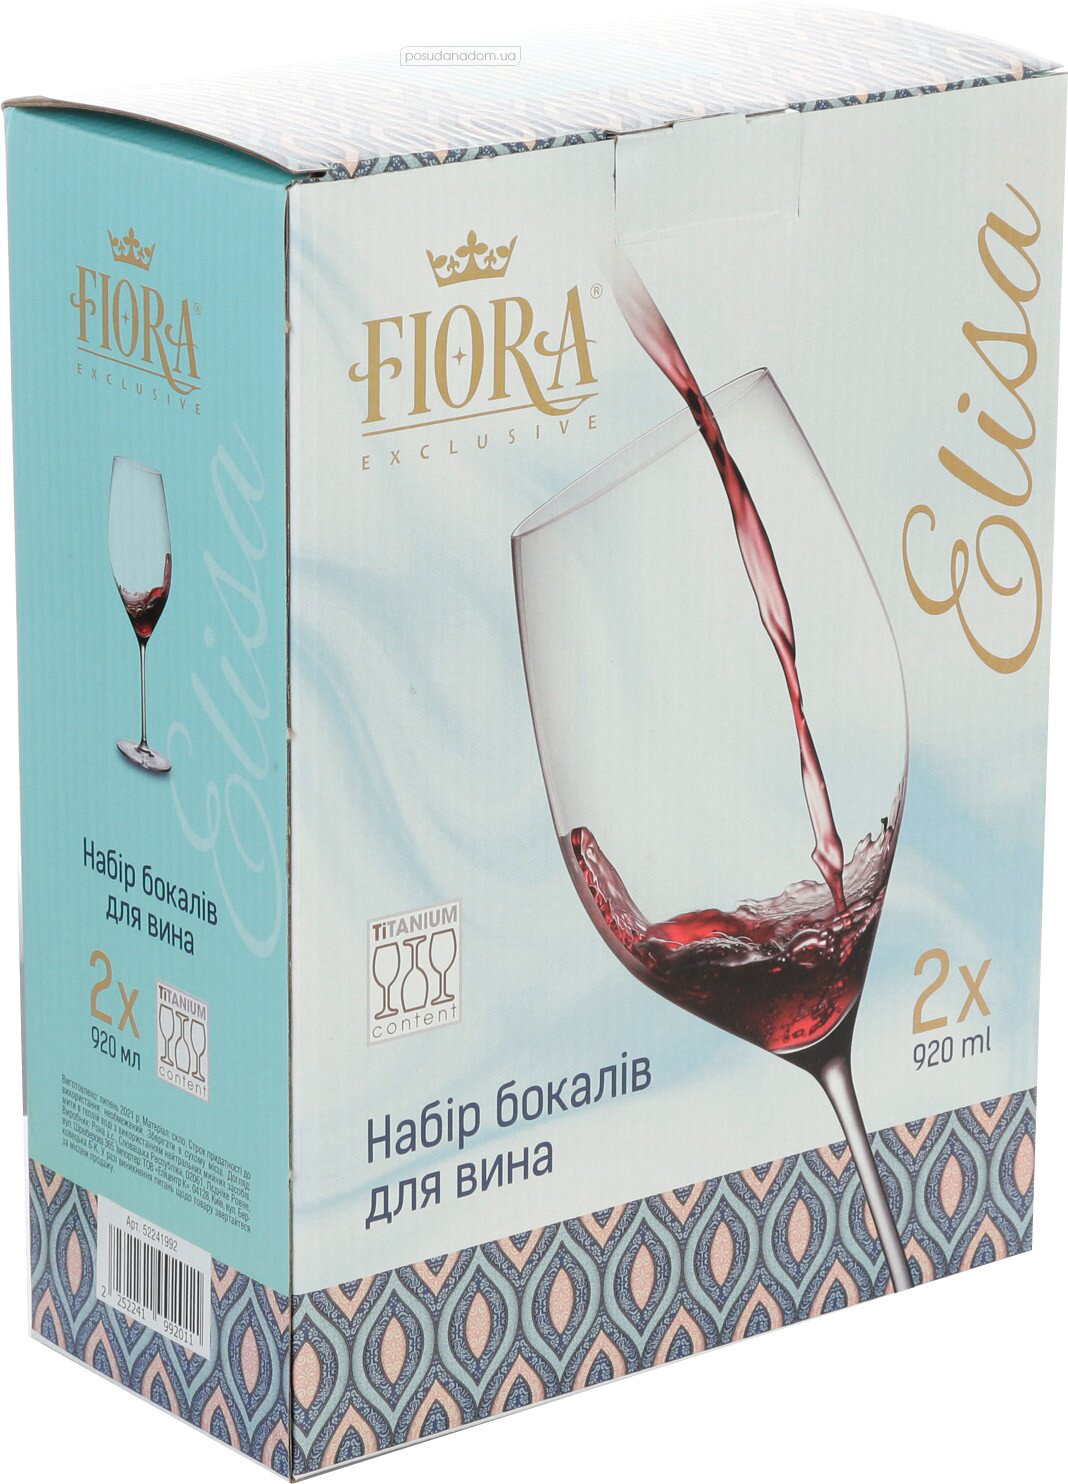 Набор бокалов для вина Fiora 52241992 Elisa 920 мл